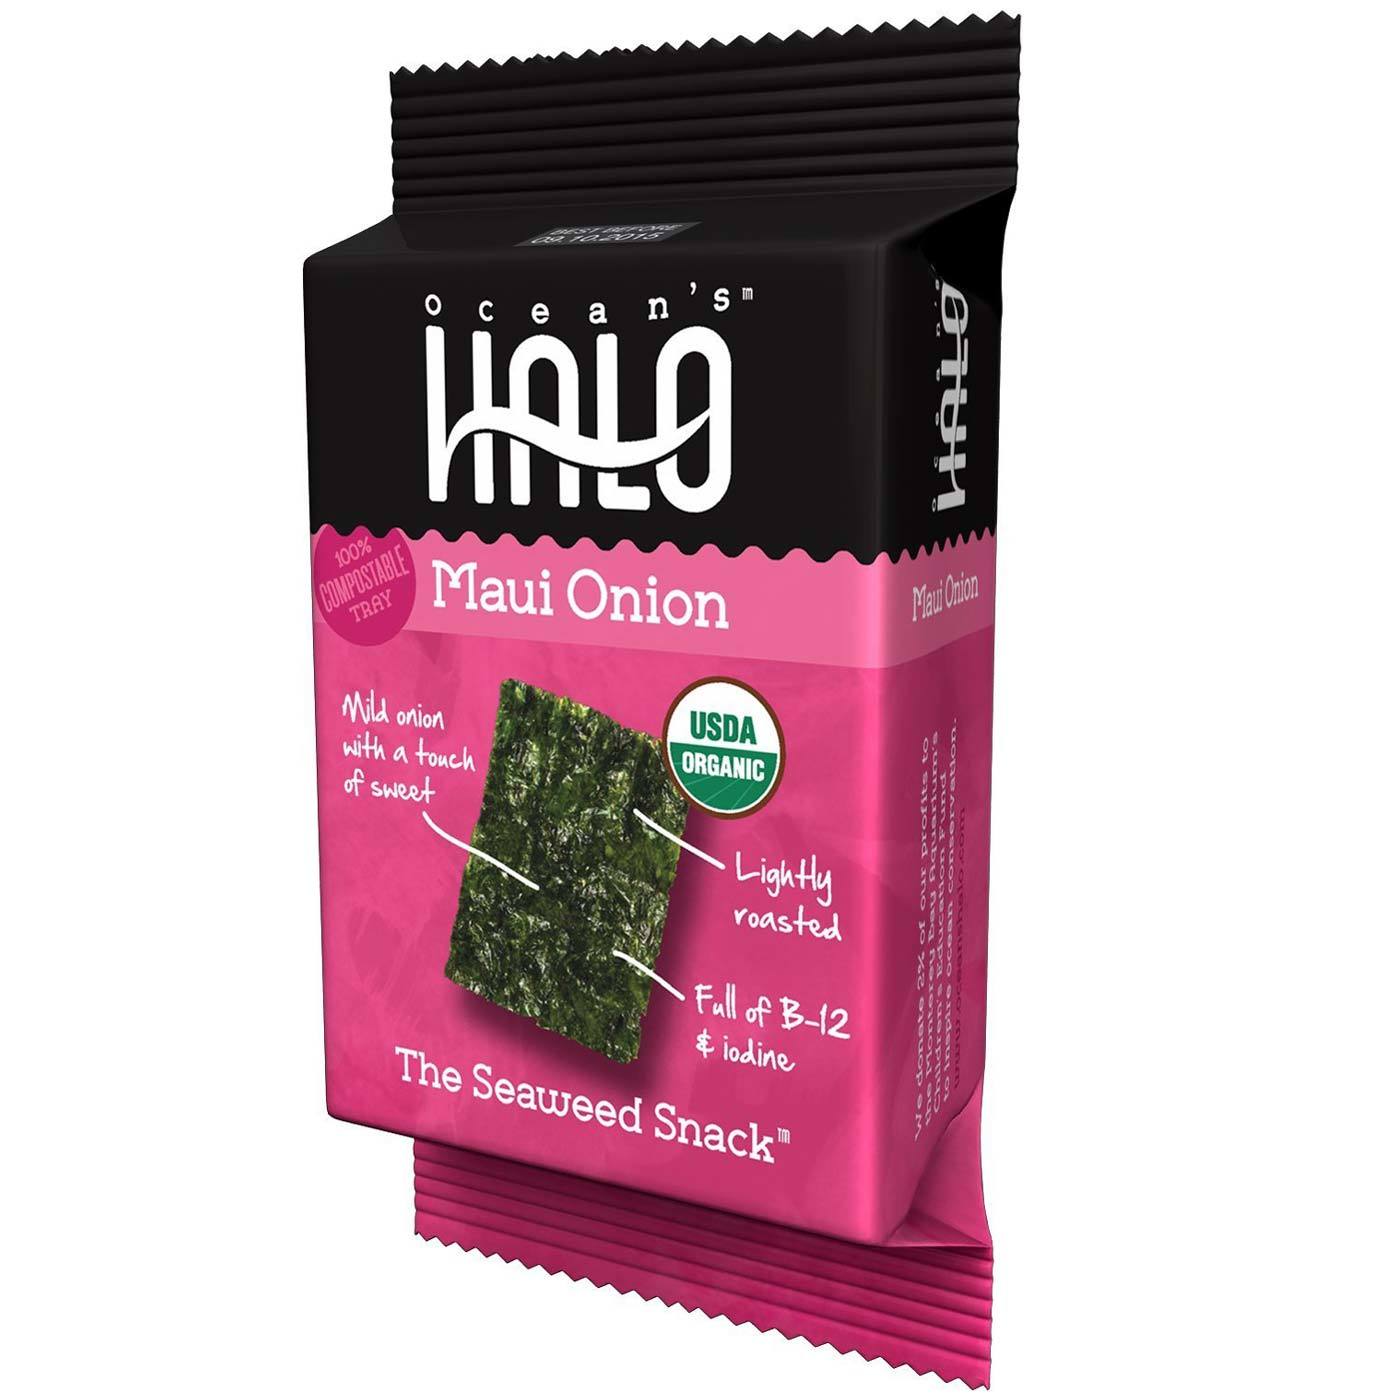 Ocean's Halo Seaweed Snack, Maui Onion 5 Packs